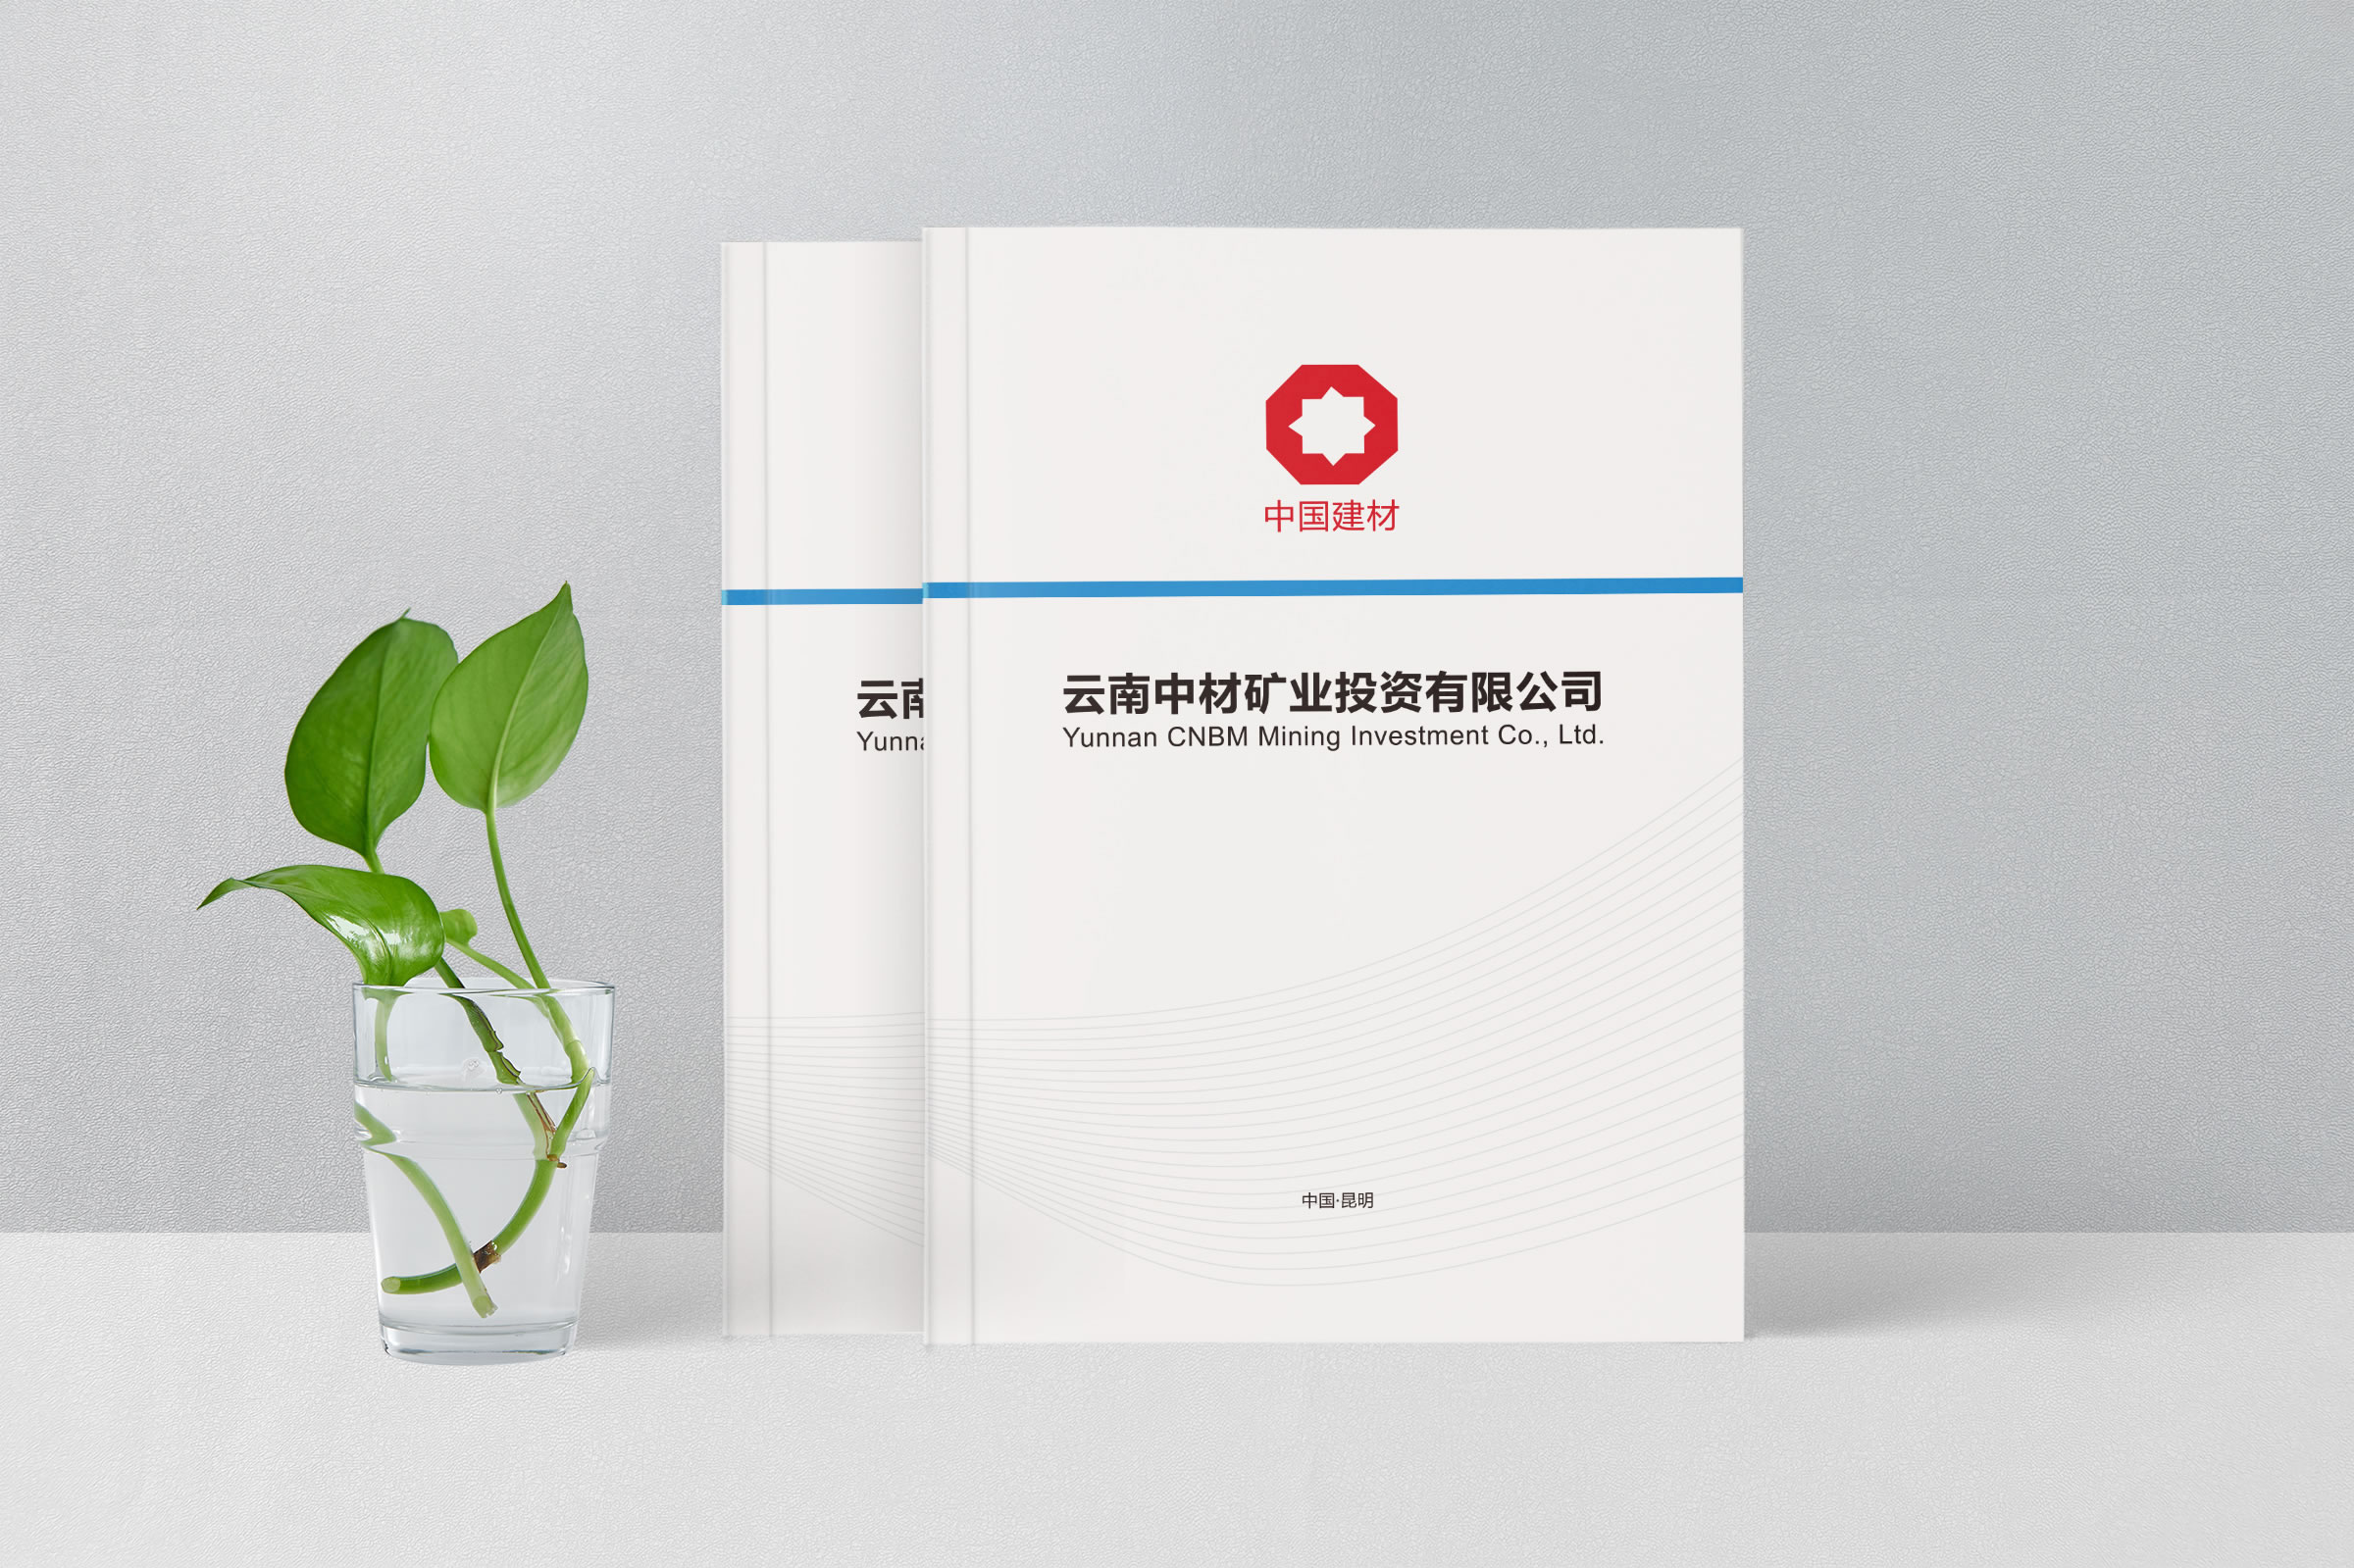 公司宣传册设计制作----2019云南中材矿业投资有限